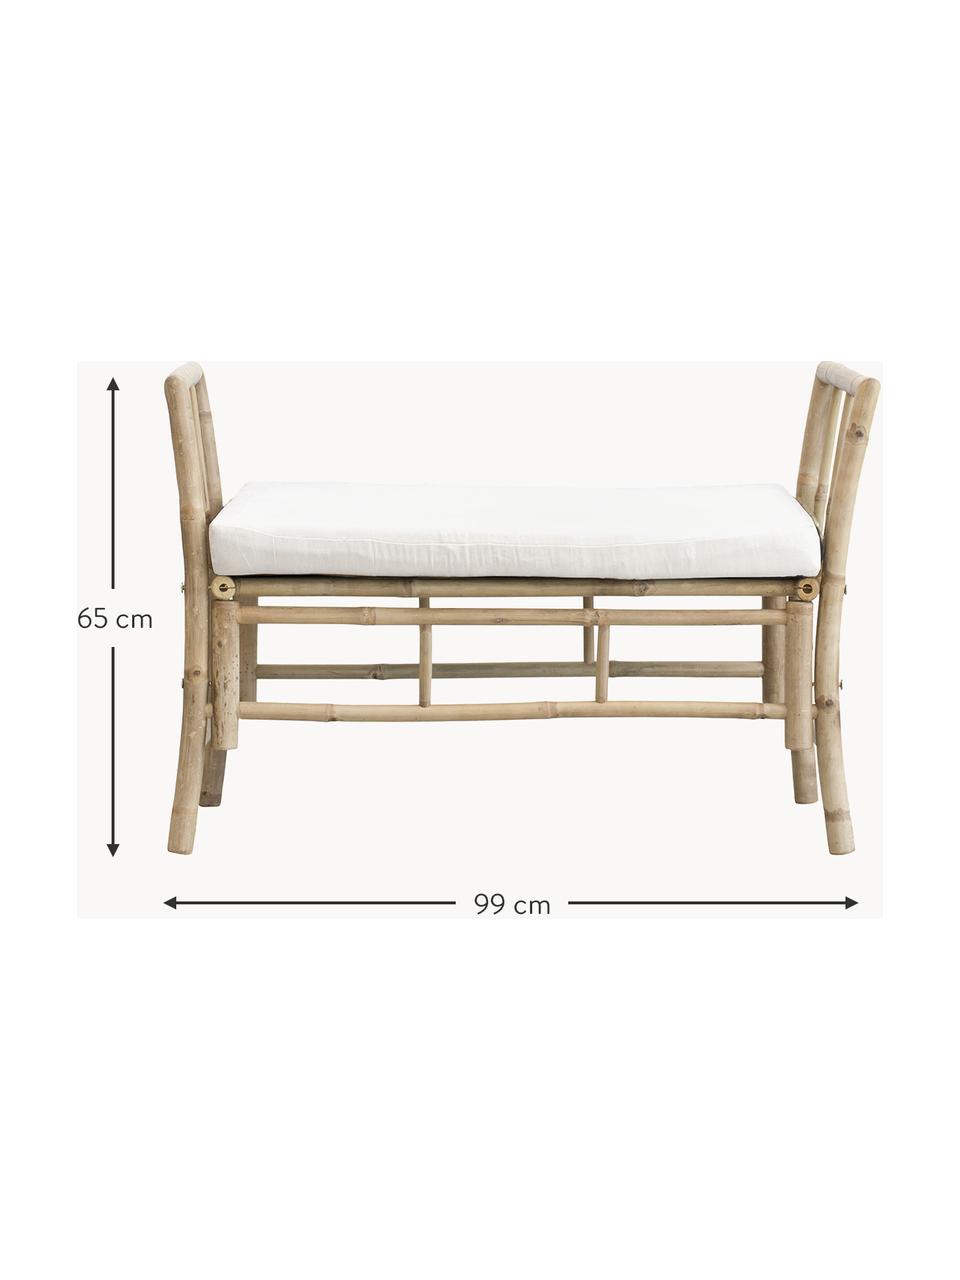 Zahradní lavice z bambusu s polstrovaným sedákem Mandisa, Krémově bílá, béžová, Š 99 cm, V 65 cm